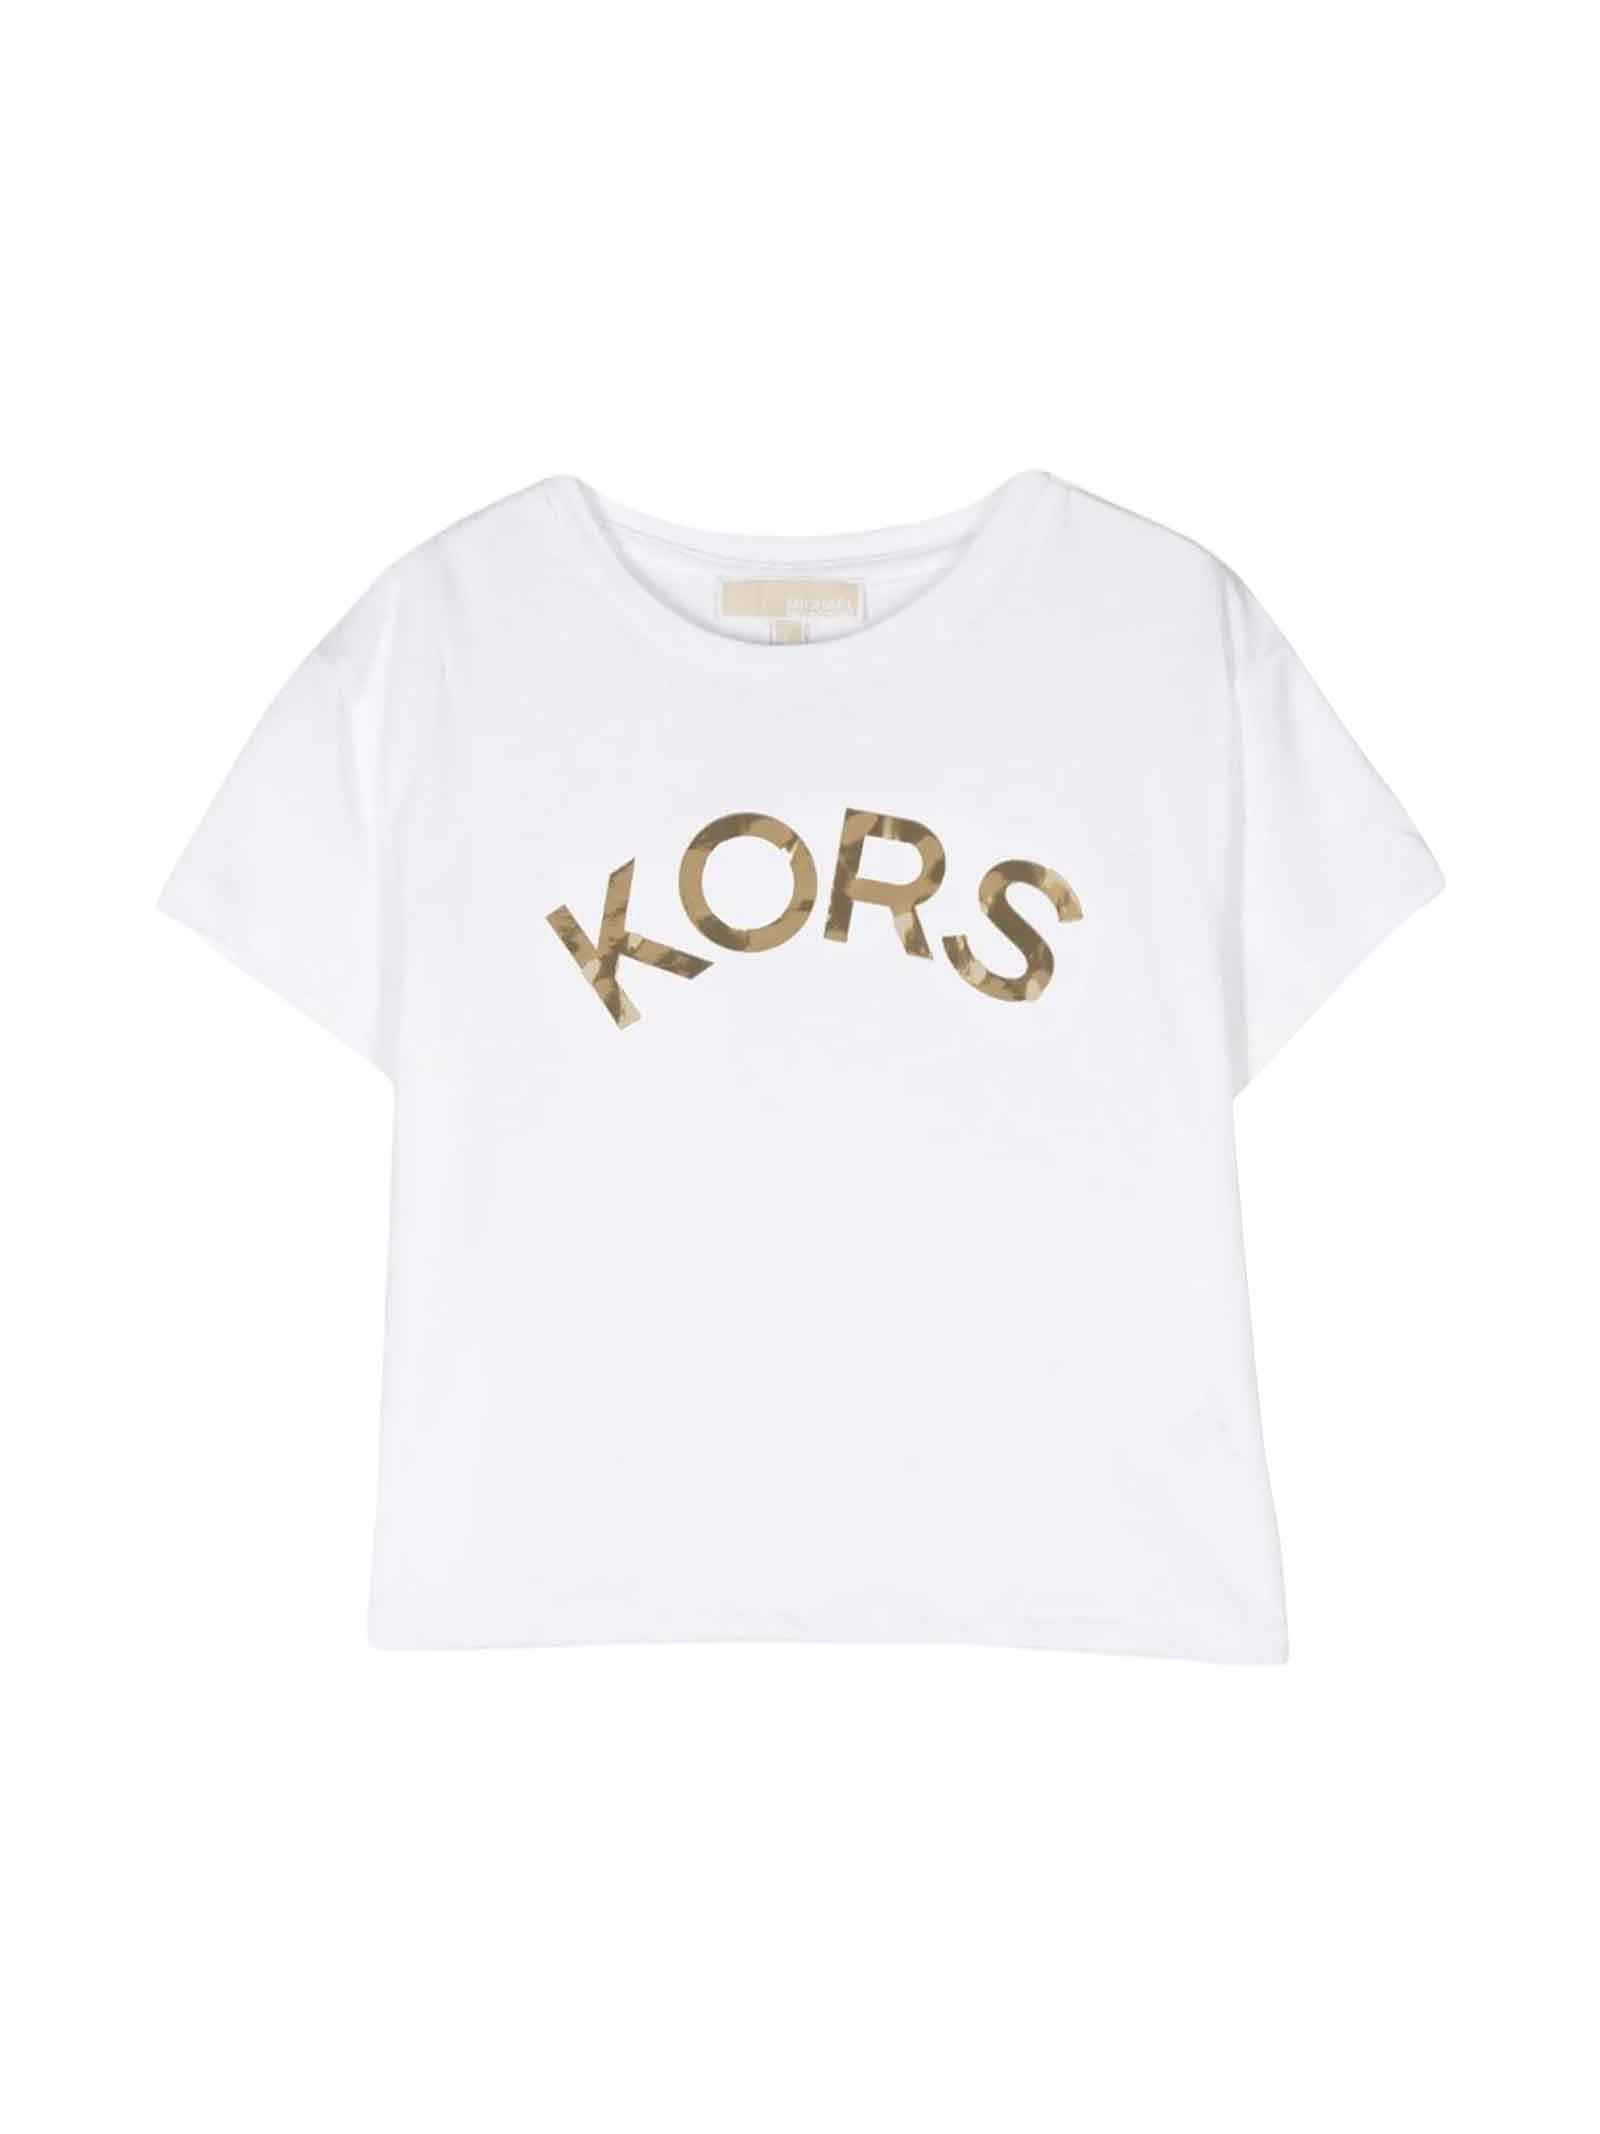 Michael Kors White T-shirt Girl